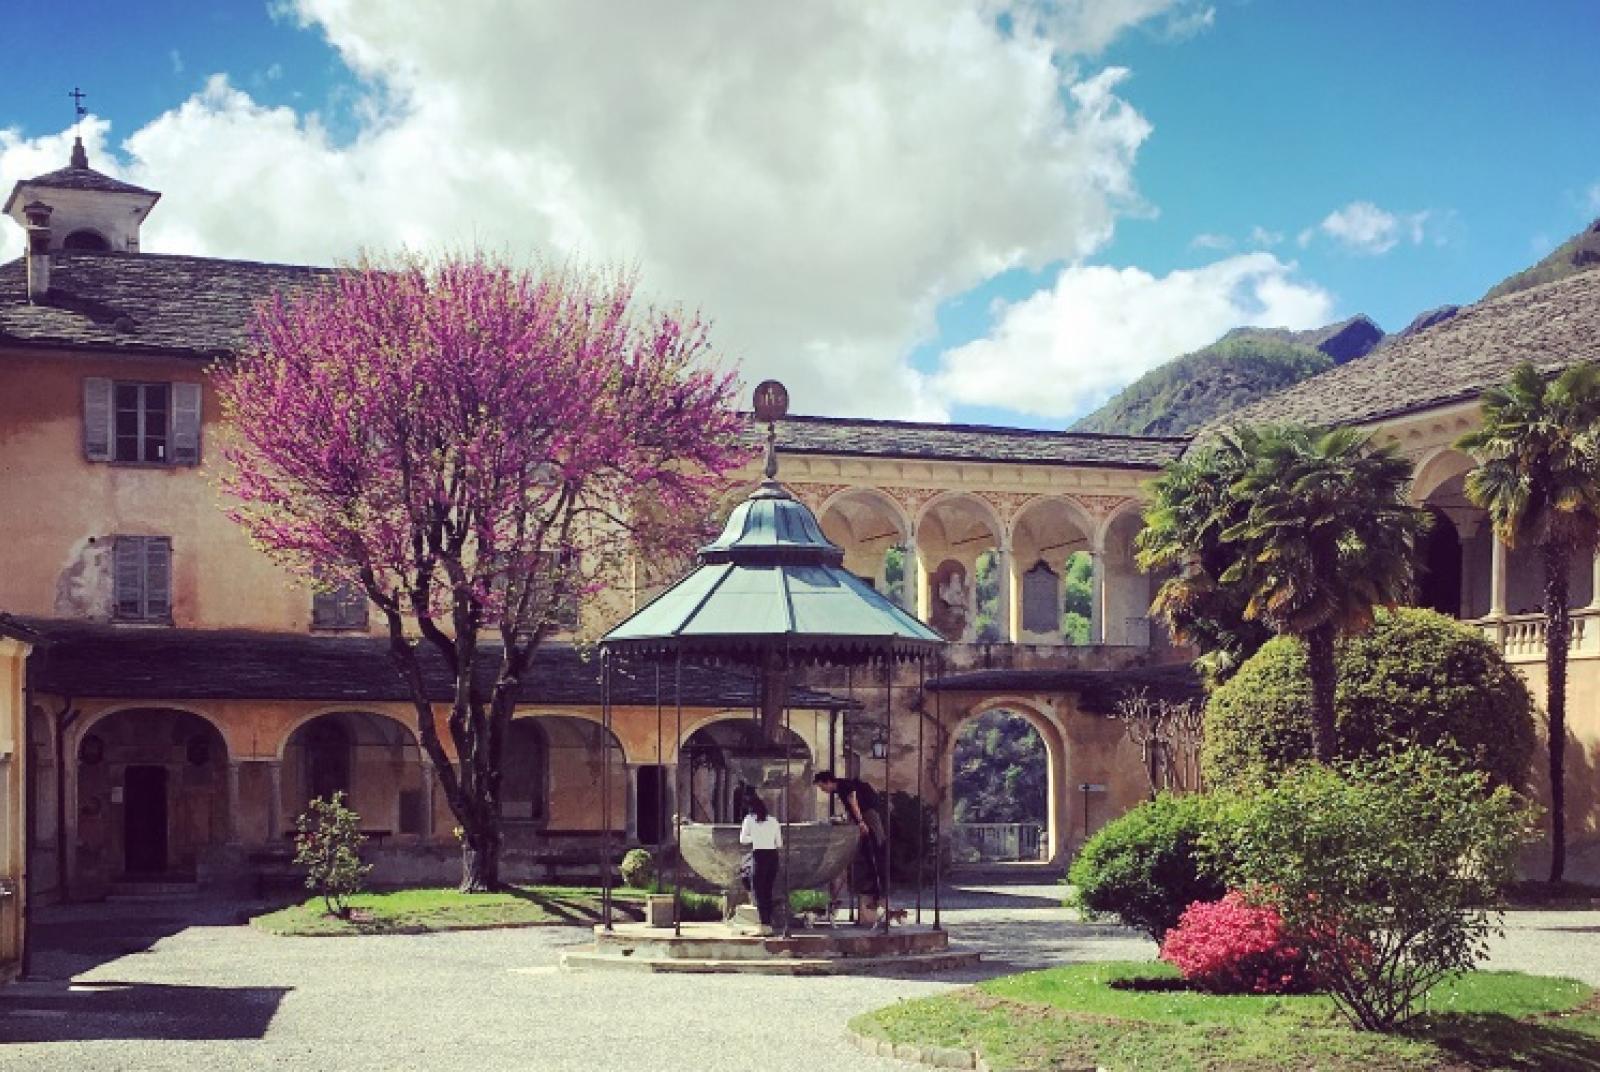 Visites guidées au Sacro Monte de Varallo: une experiance extraordinaire entre art, architecture, histoire et paysage dans un site patromoine mondial de l’UNESCO